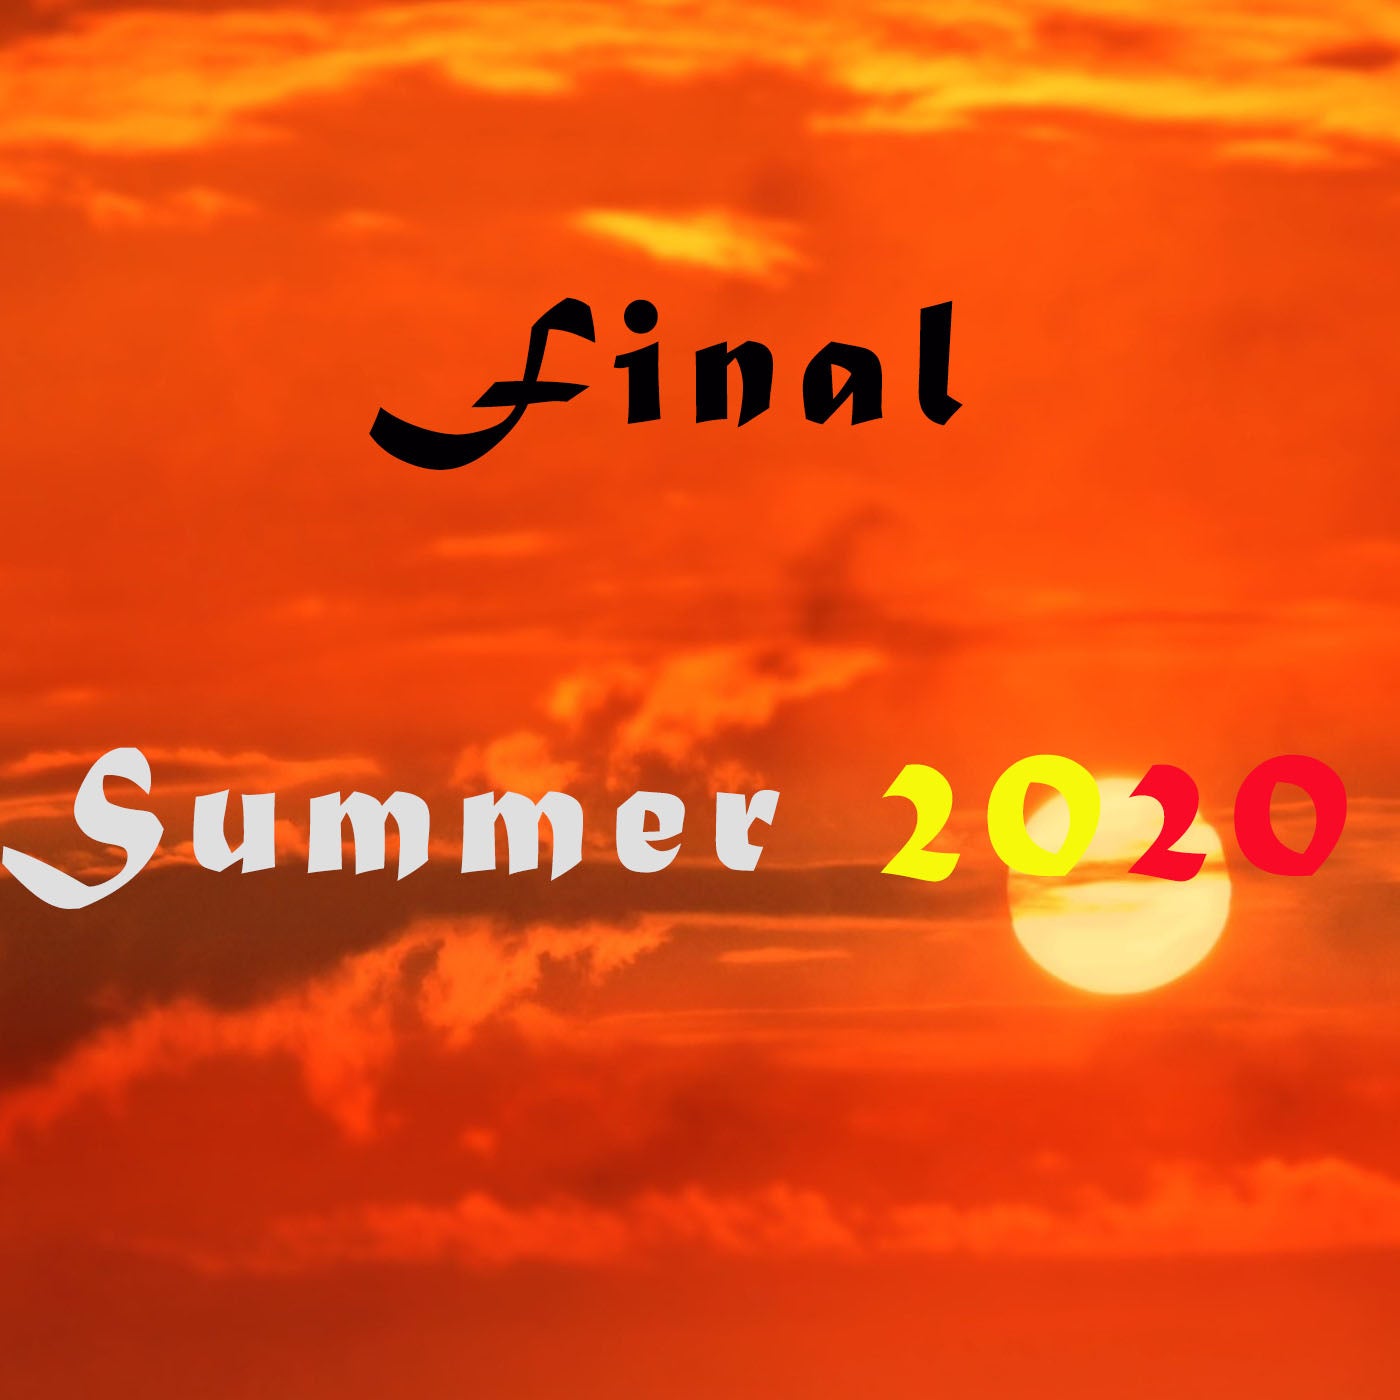 Final Summer 2020